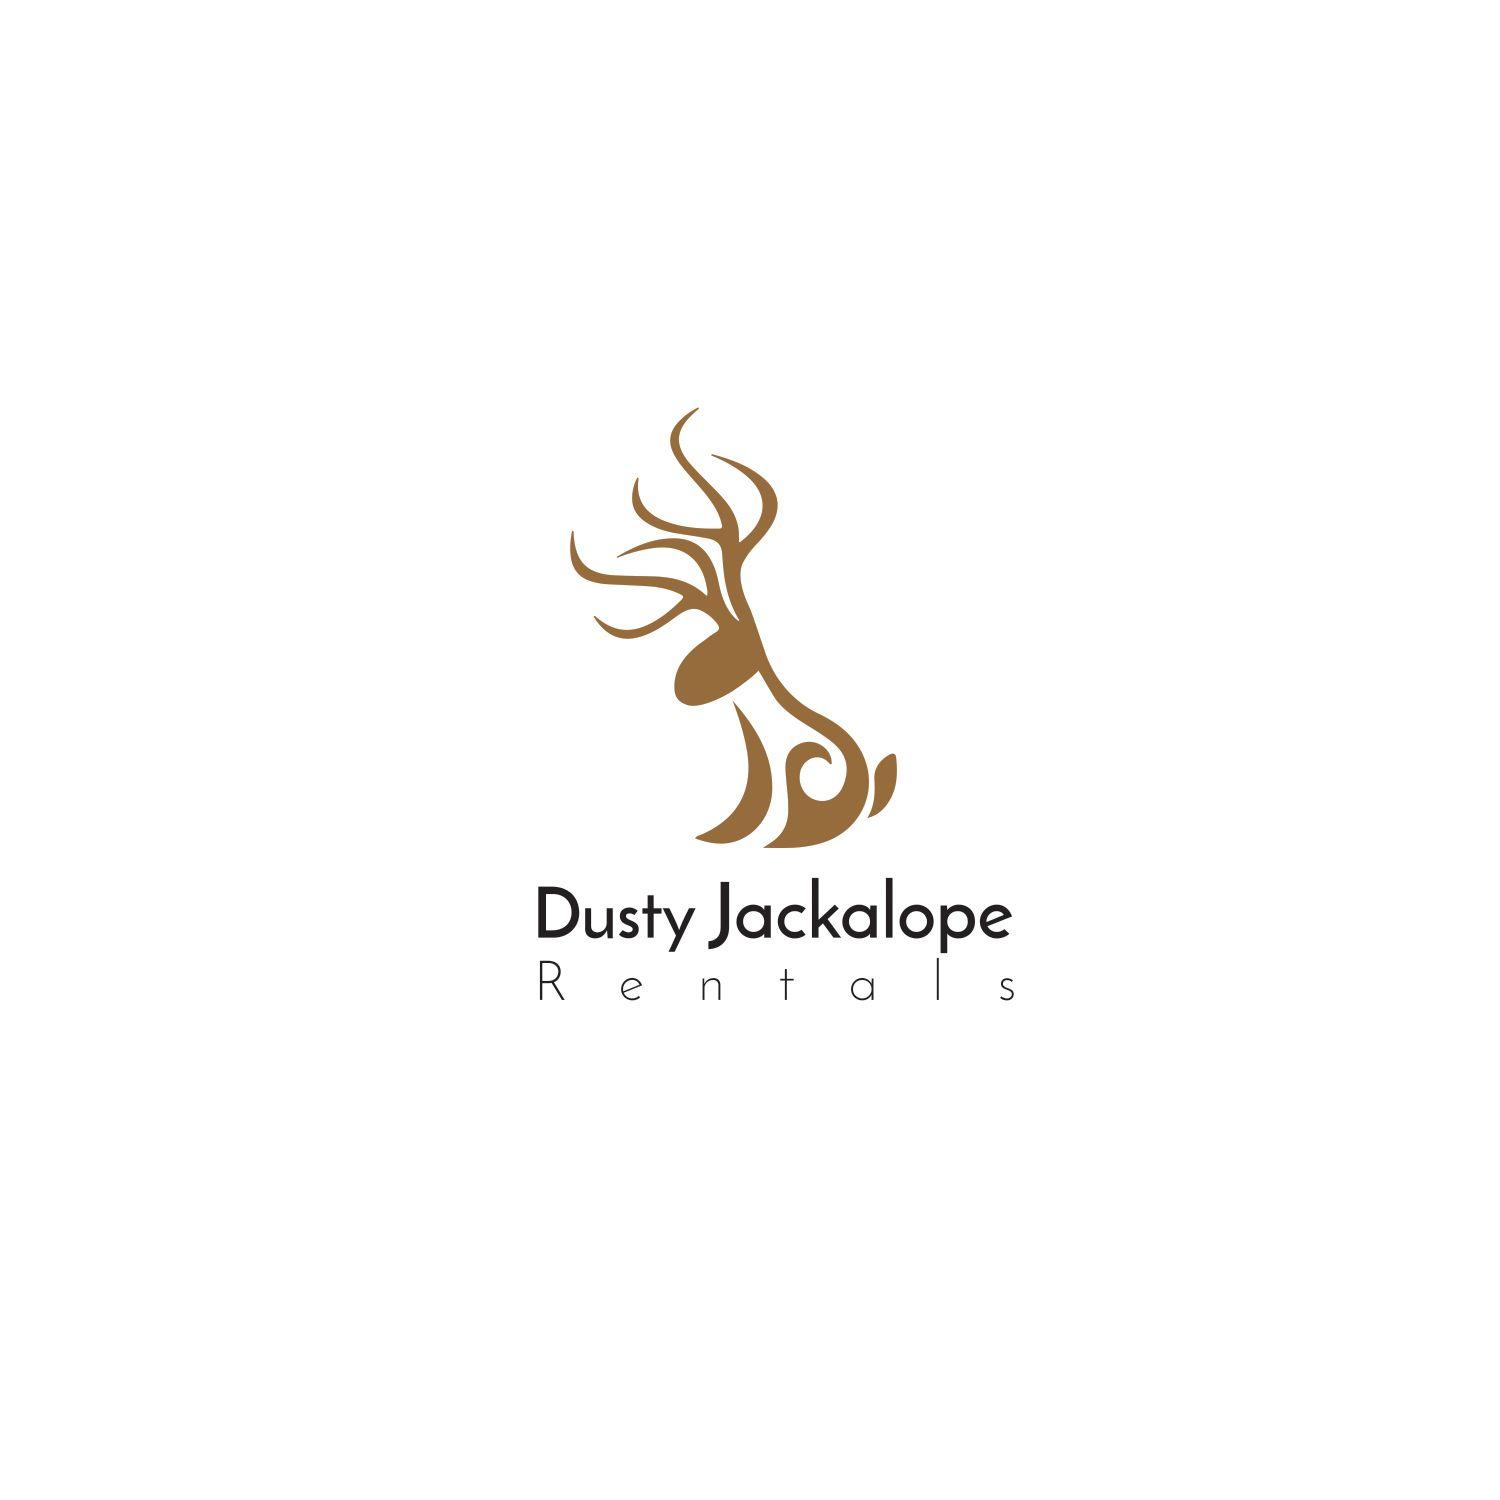 Jackalope Logo - Playful, Modern, It Company Logo Design for Dusty Jackalope Rentals ...